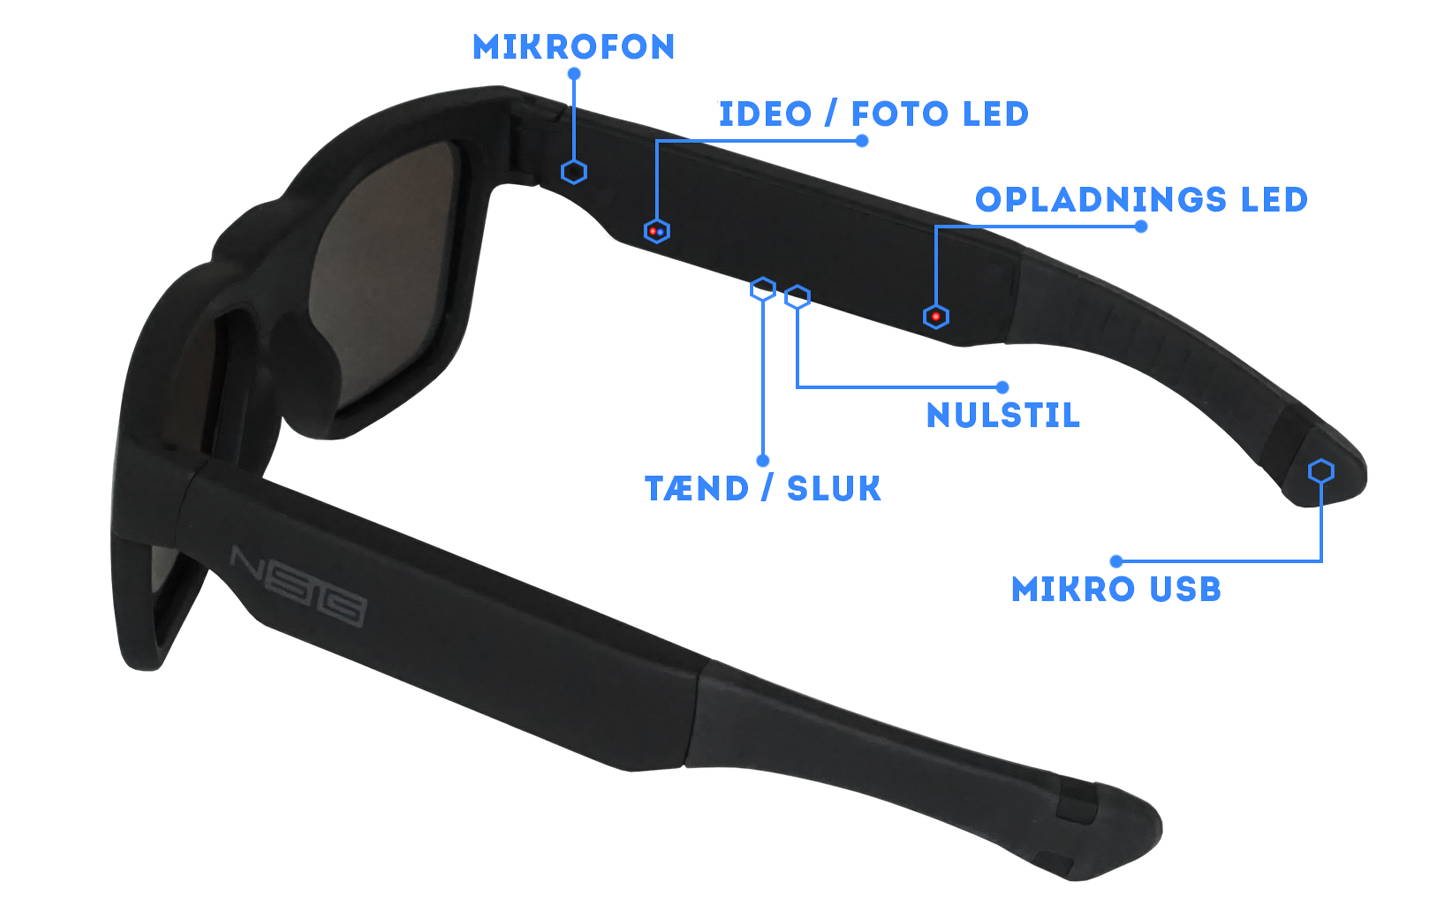 Instruktioner til Saturn kamera solbrille. Tænd/sluk, LED's, Mikrofon, Mikro USB port, Nulstil